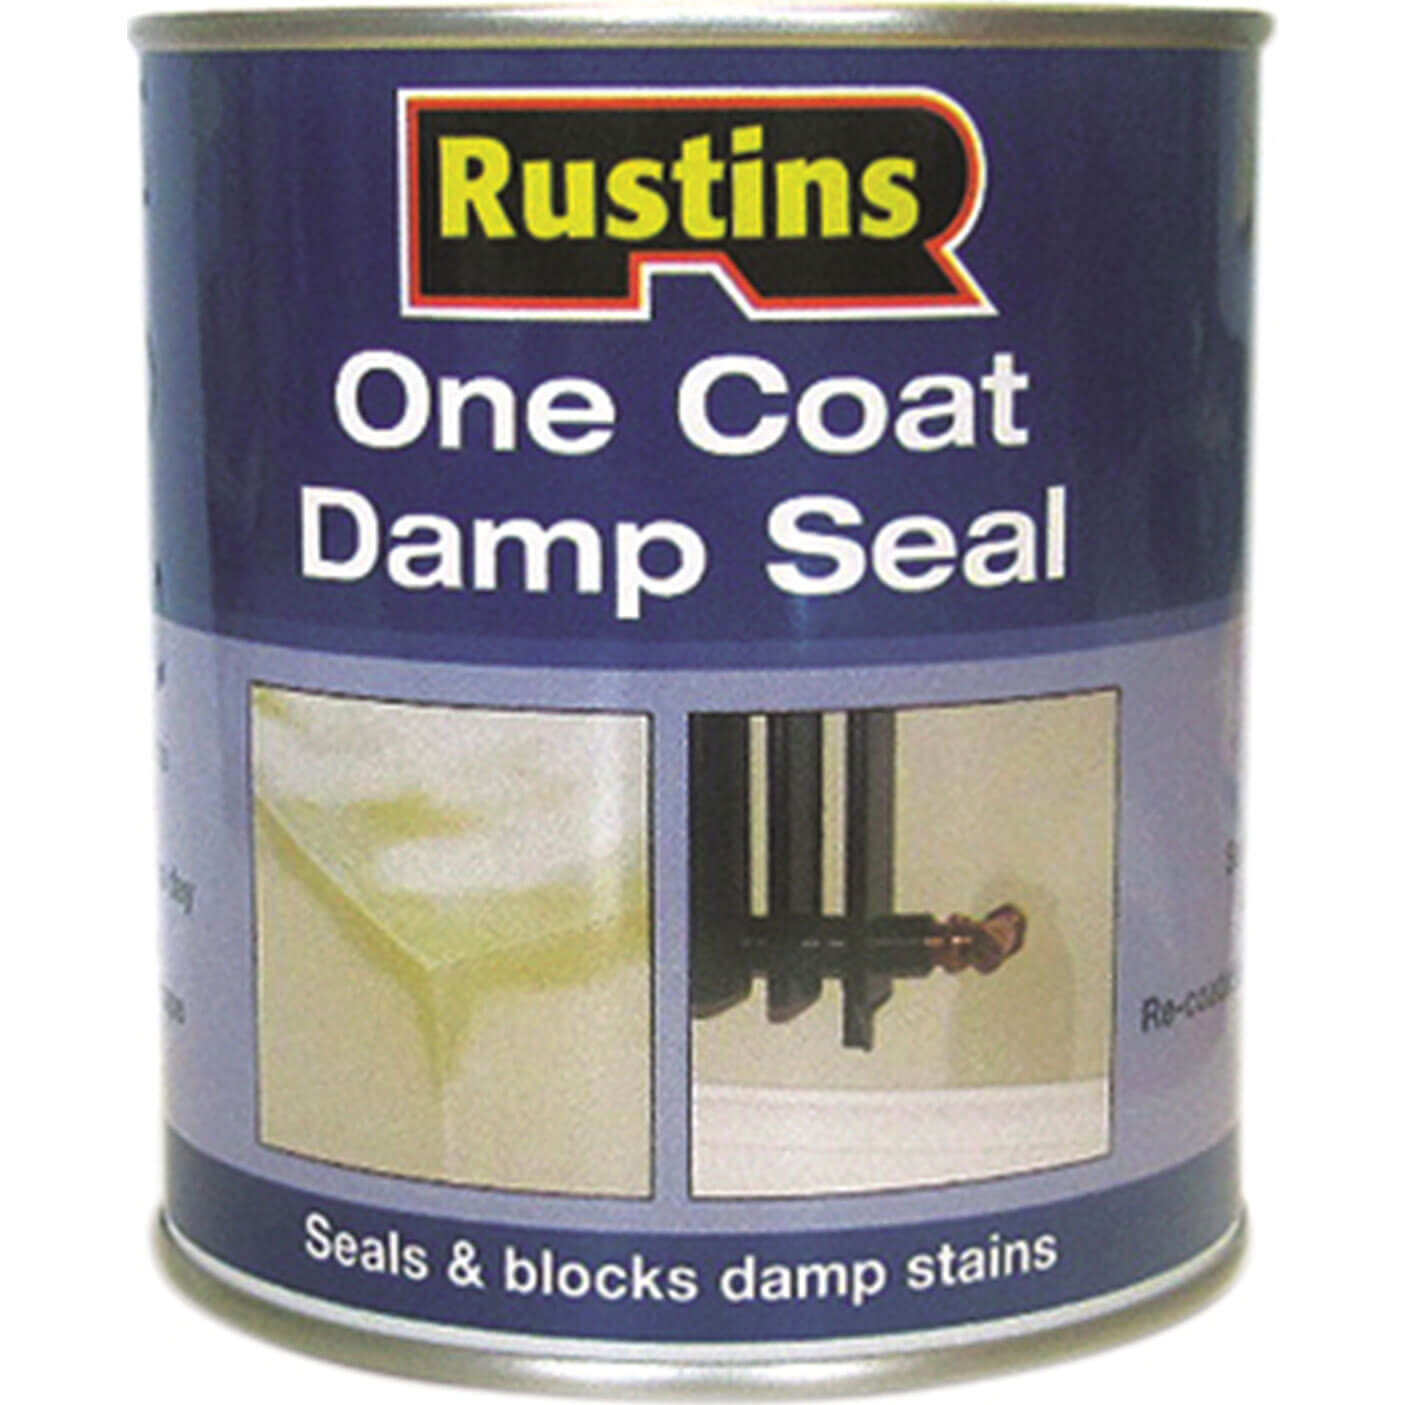 Image of Rustins One Coat Damp Seal 250ml